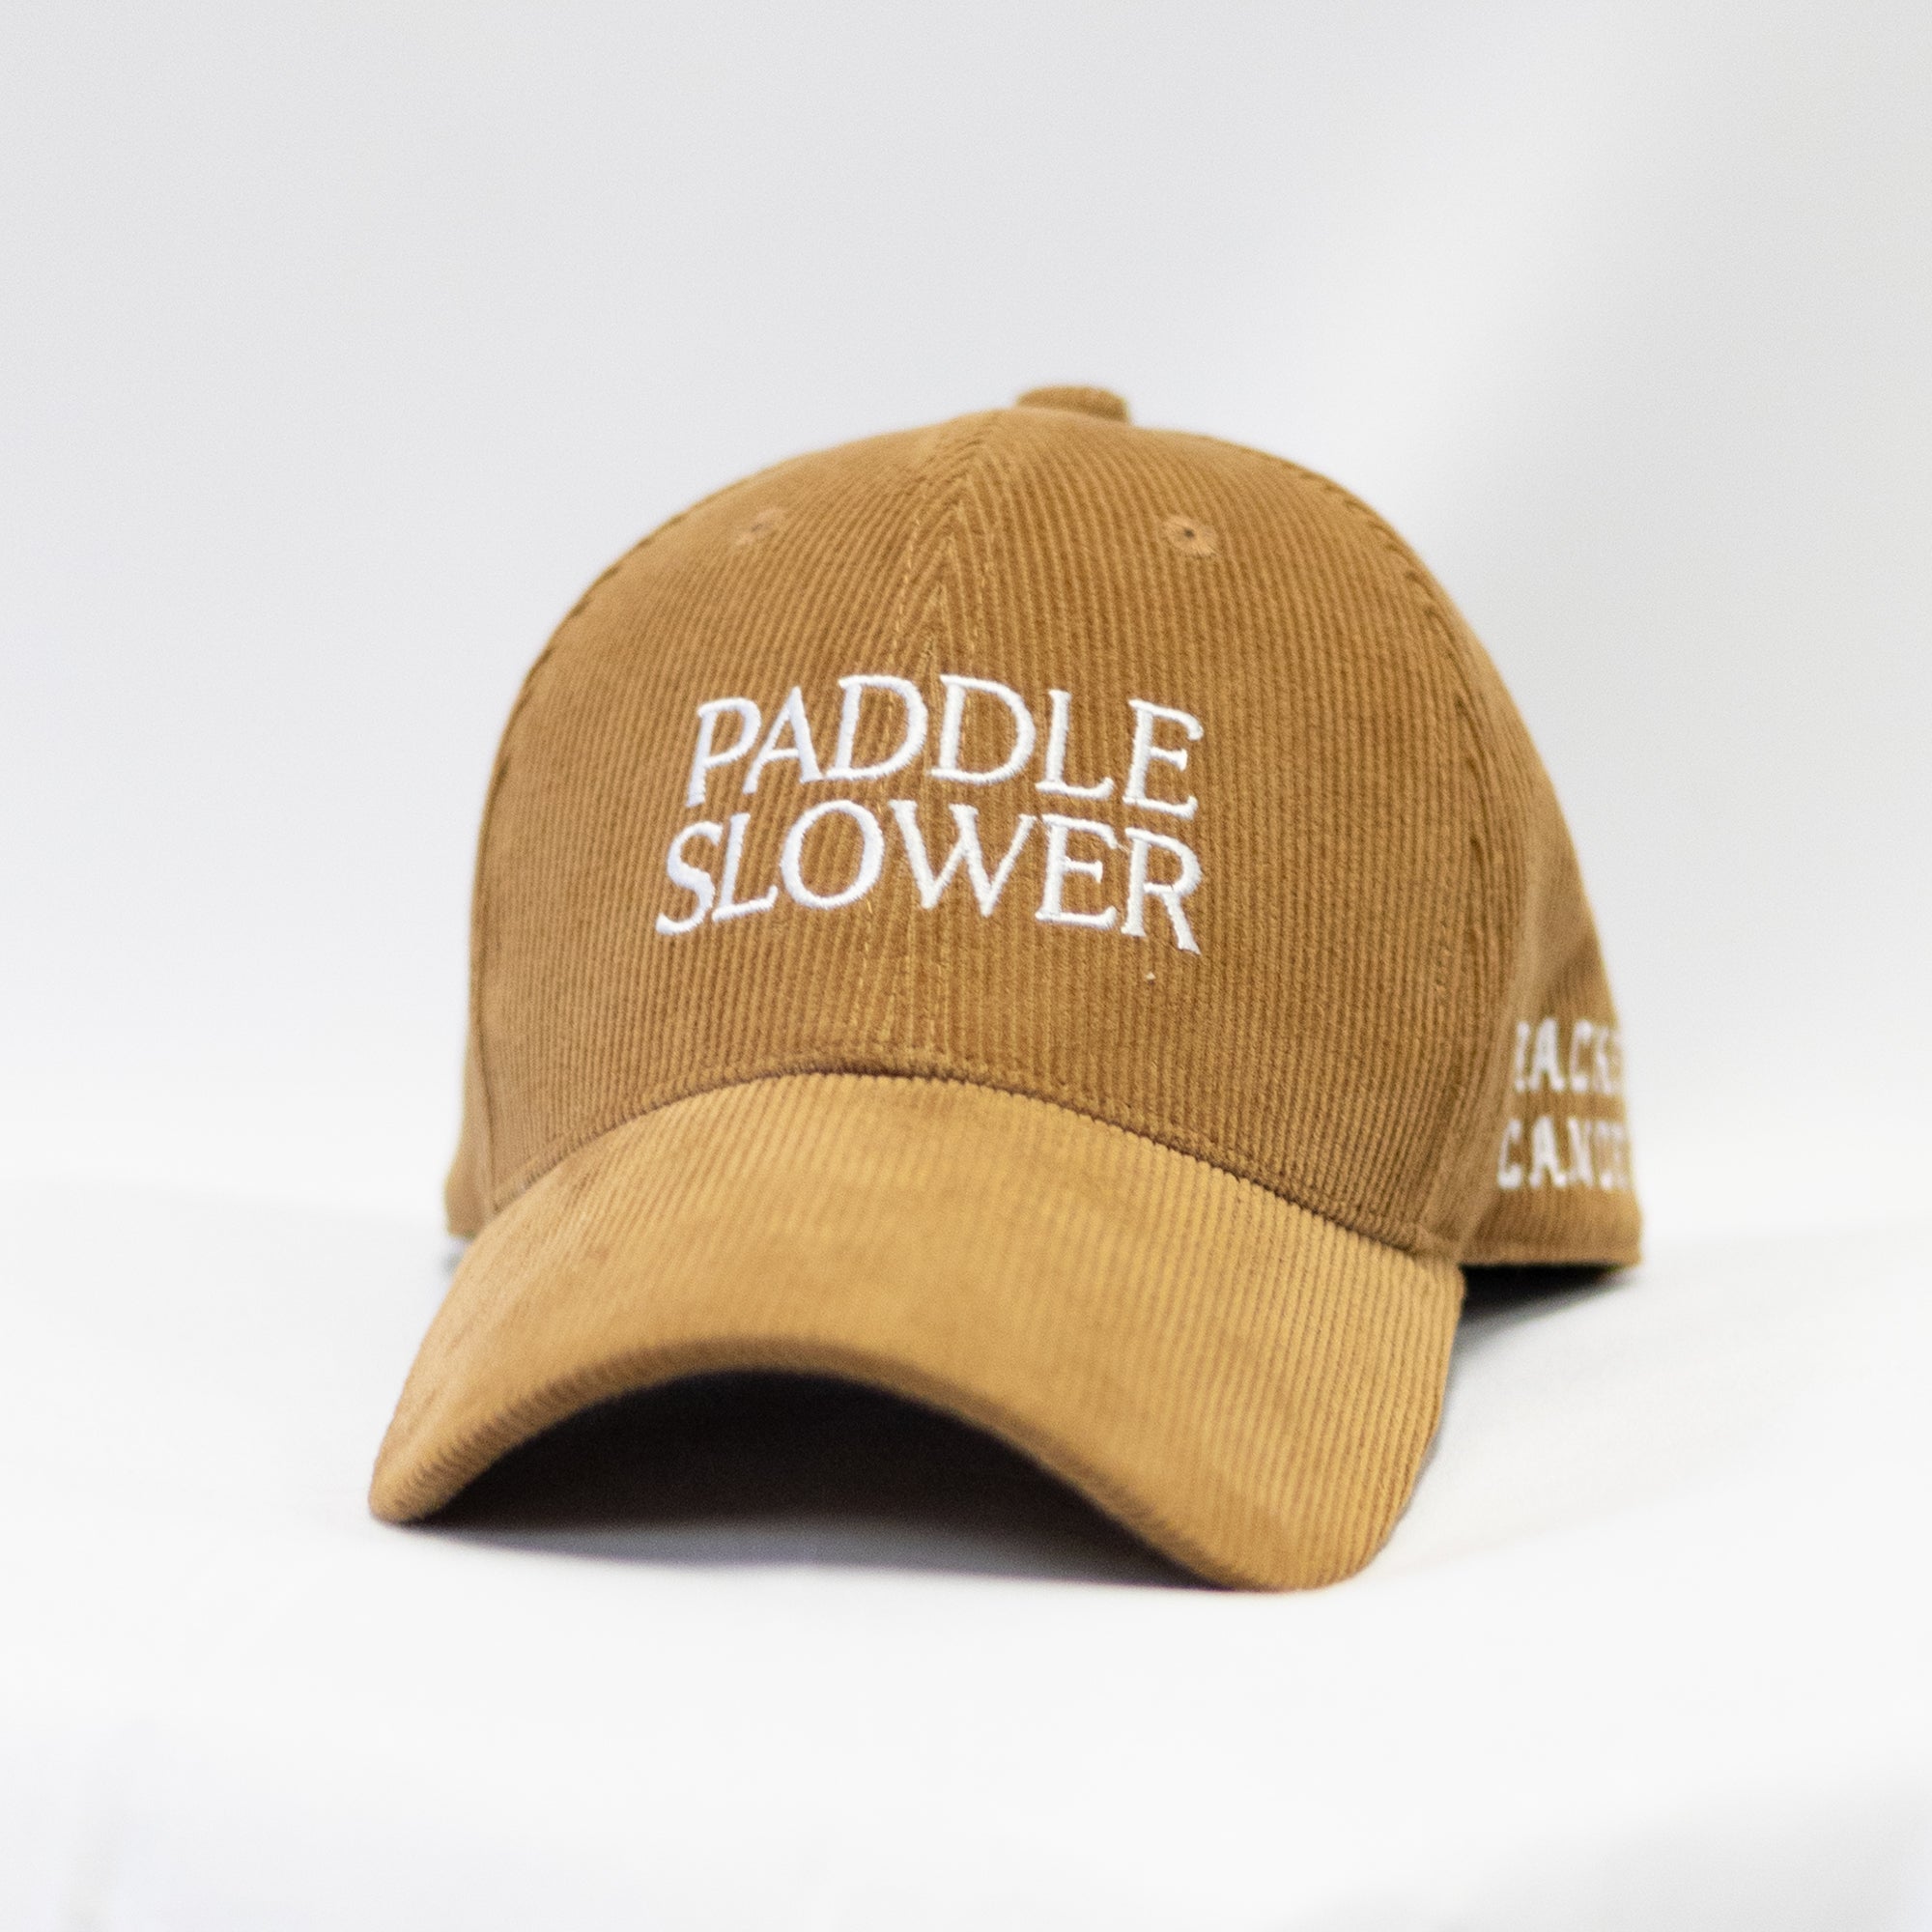 Cracked Canoe Paddle Slower Hat